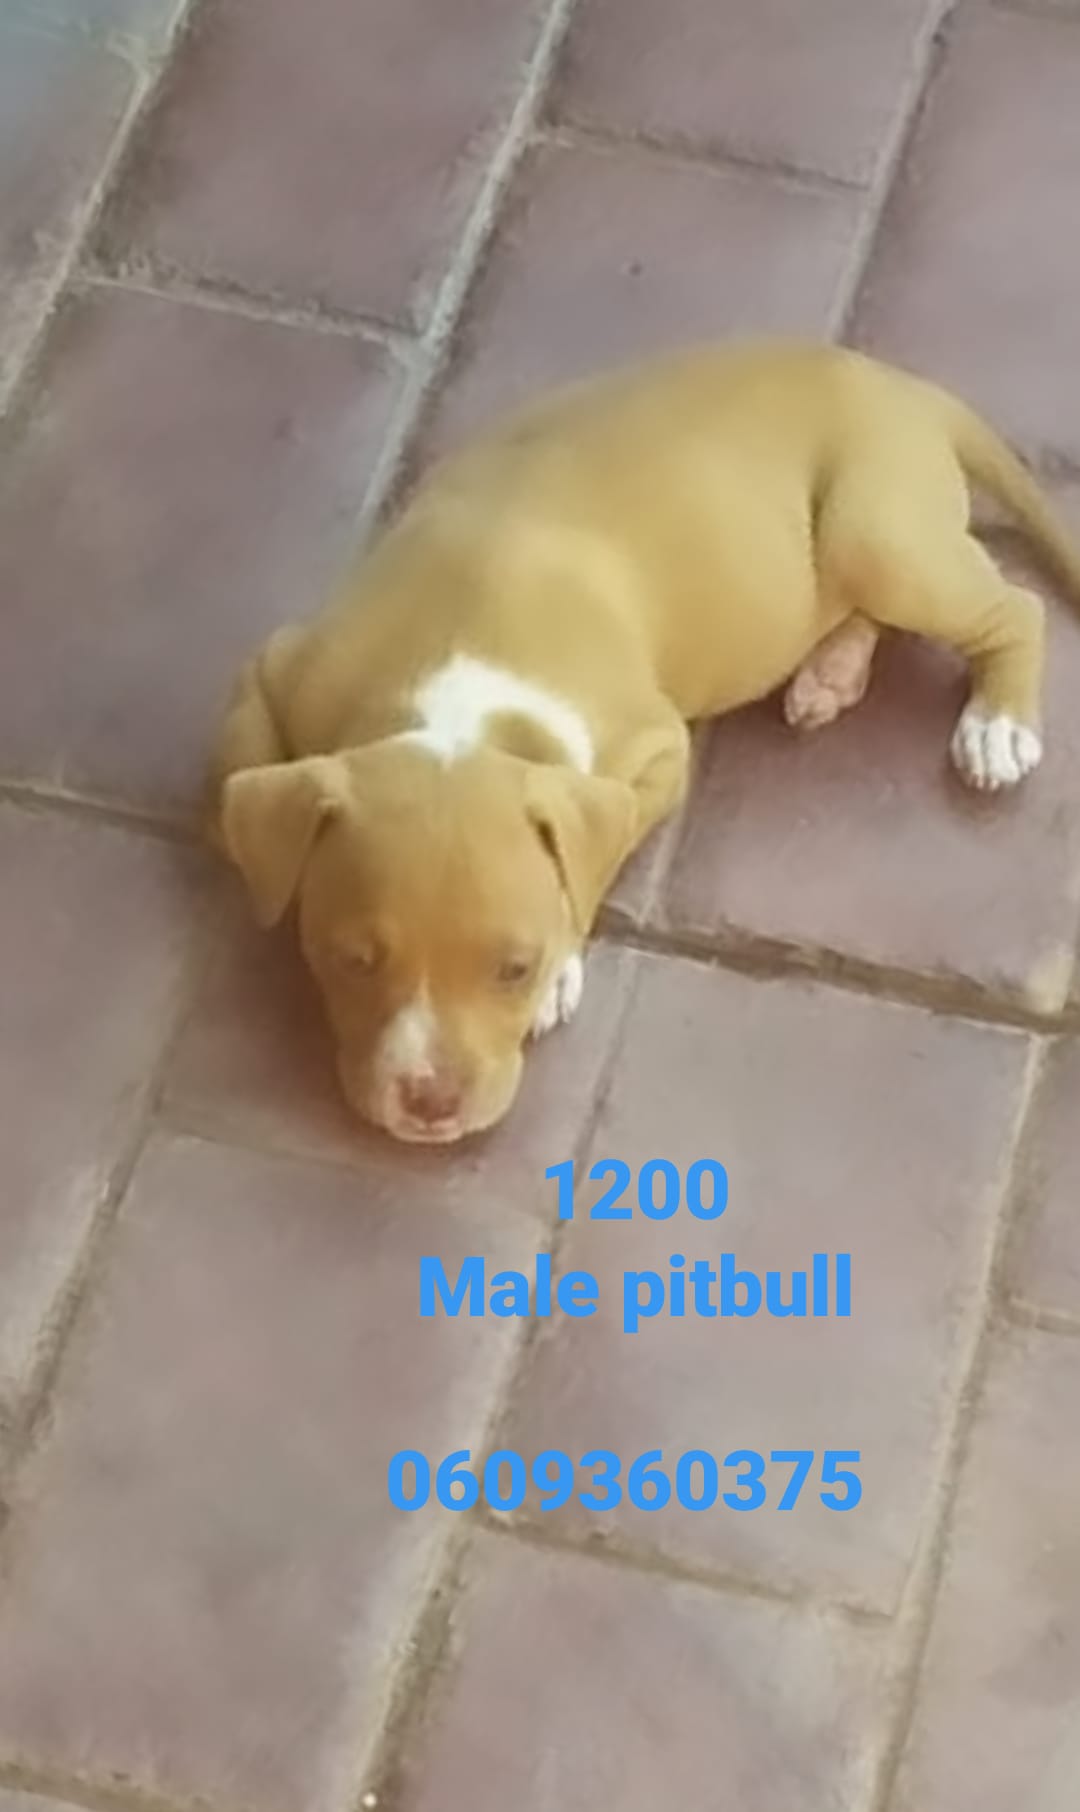 Pitbull Puppies in Pretoria (30/03/2021)